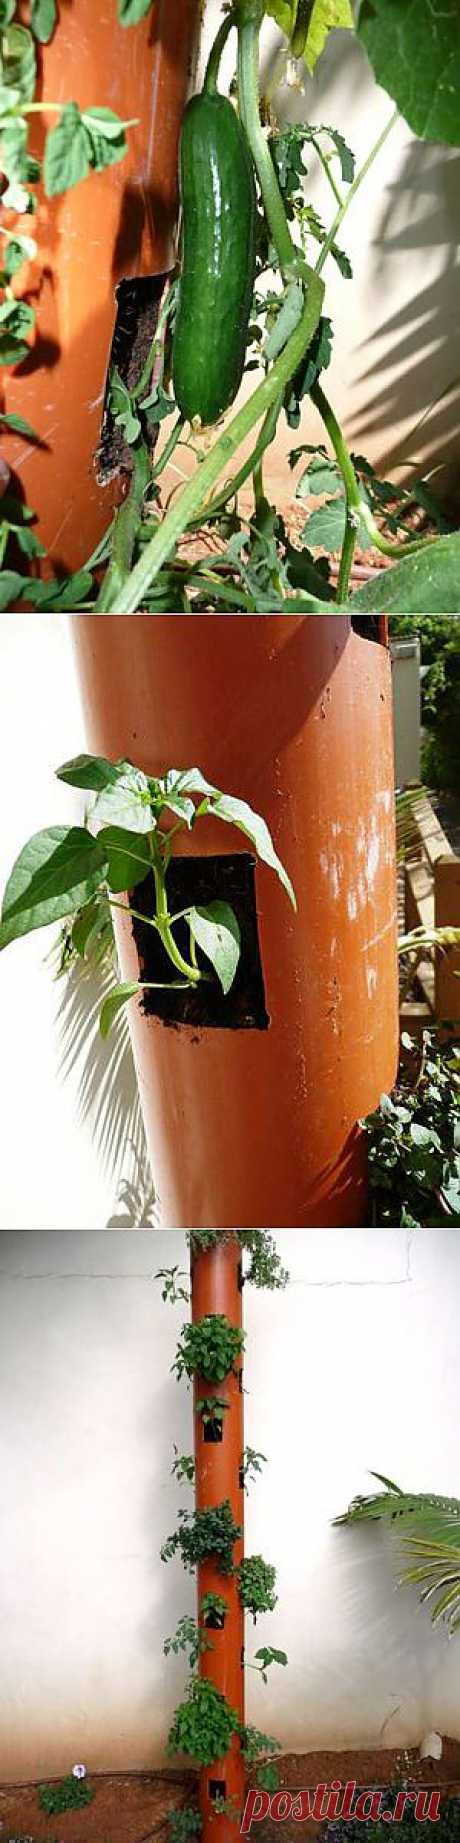 Как вам такой способ выращивания огурцов?. Так ведь можно и на балконе плантации огуречные разводить? Вертикальная посадка - отличное решение и для маленьких садовых участков.